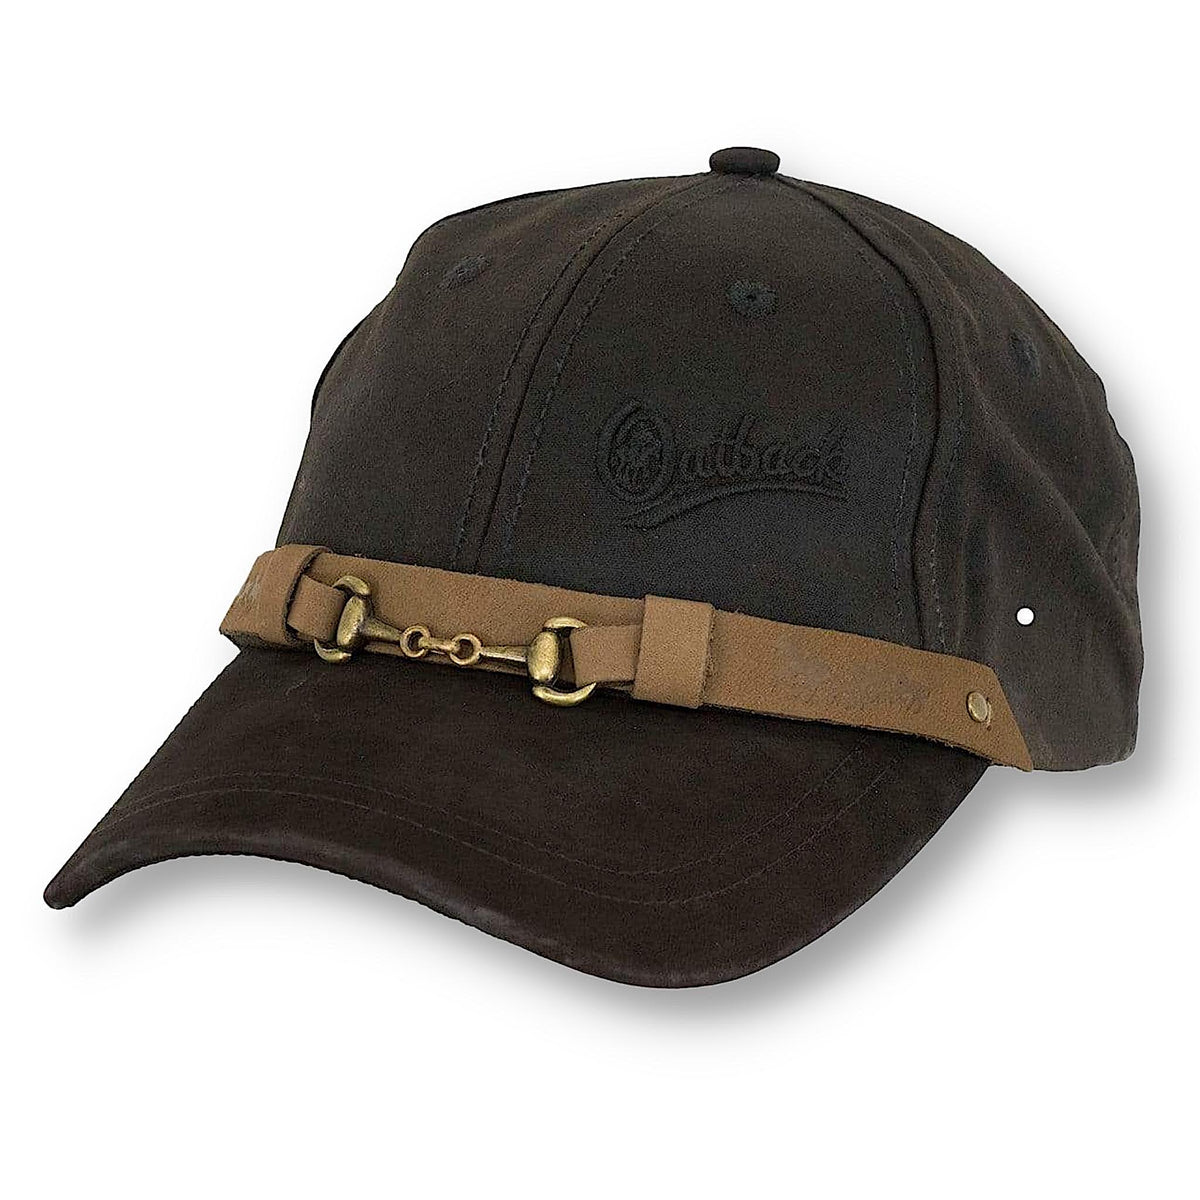 The brown oilskin equestrian cap.